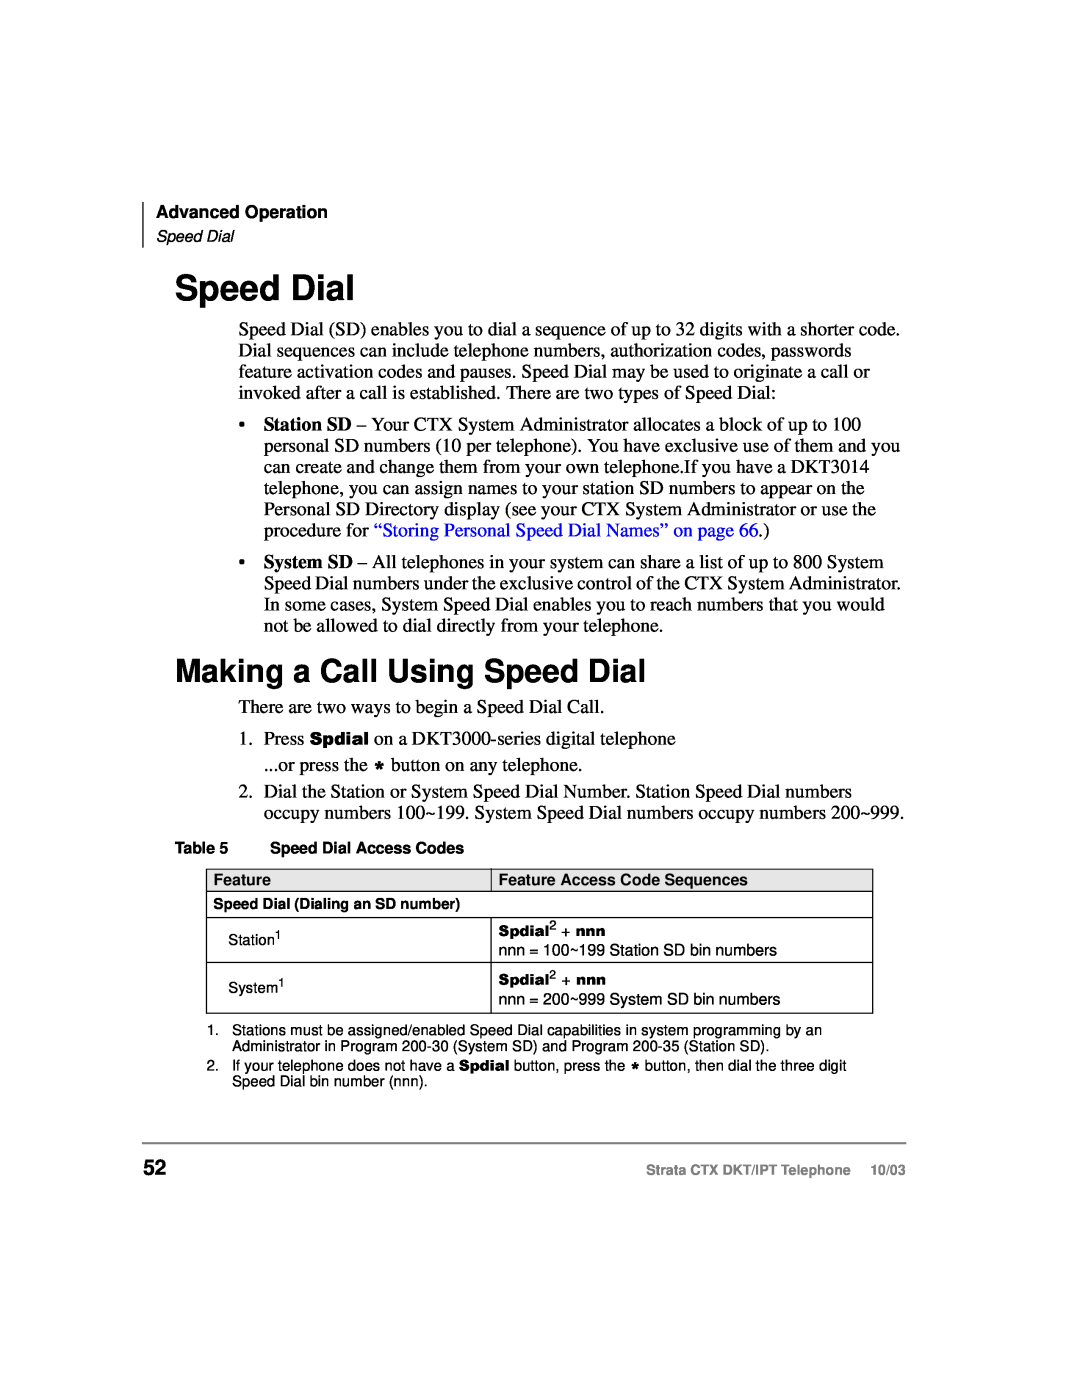 Toshiba IPT, DKT manual Making a Call Using Speed Dial, 6SGLDO2+QQQ 